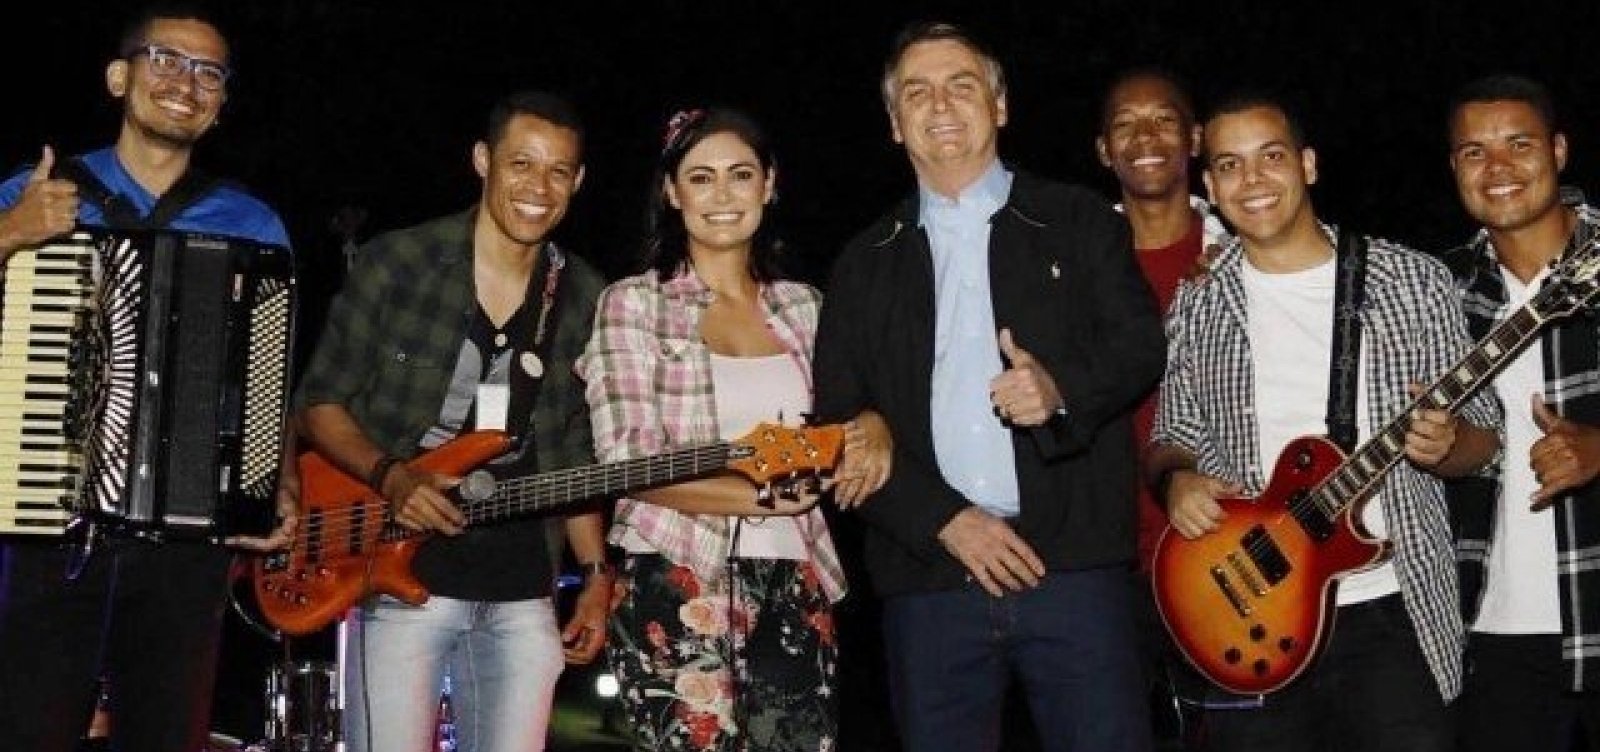 Em meados de julho, Bolsonaro e primeira-dama promovem arraiá no Palácio da Alvorada